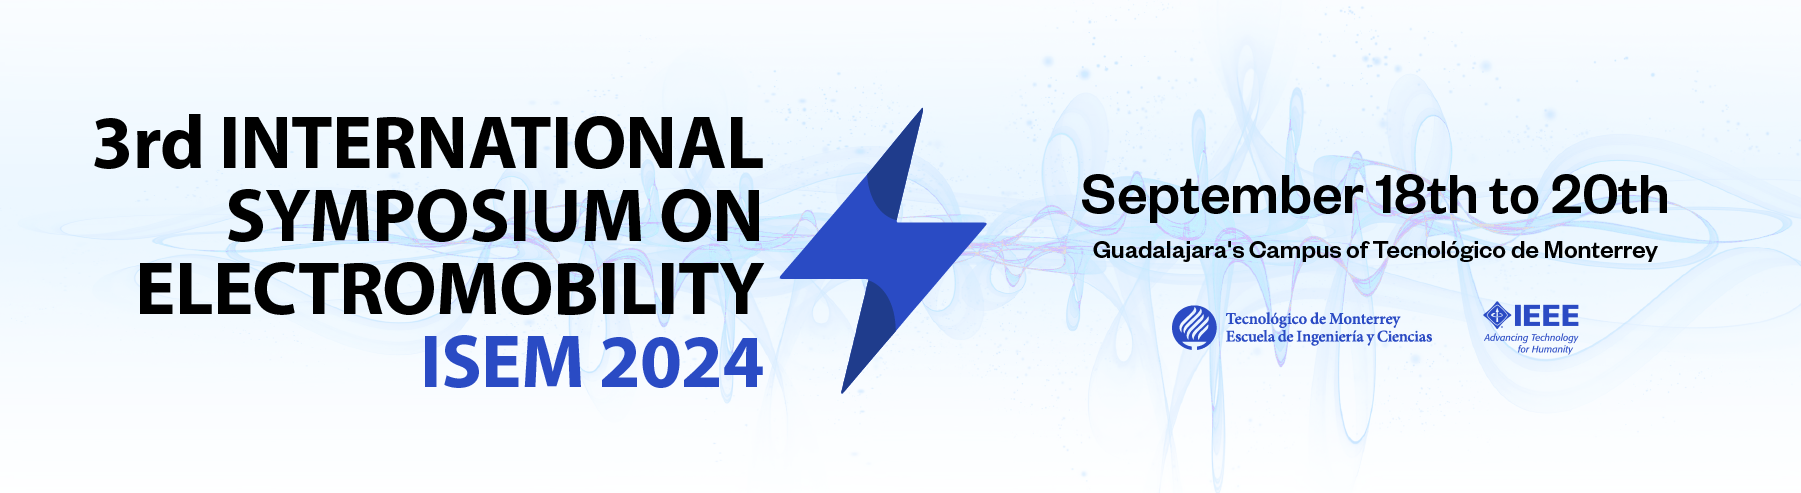 2023 International Symposium on Electromobility isem